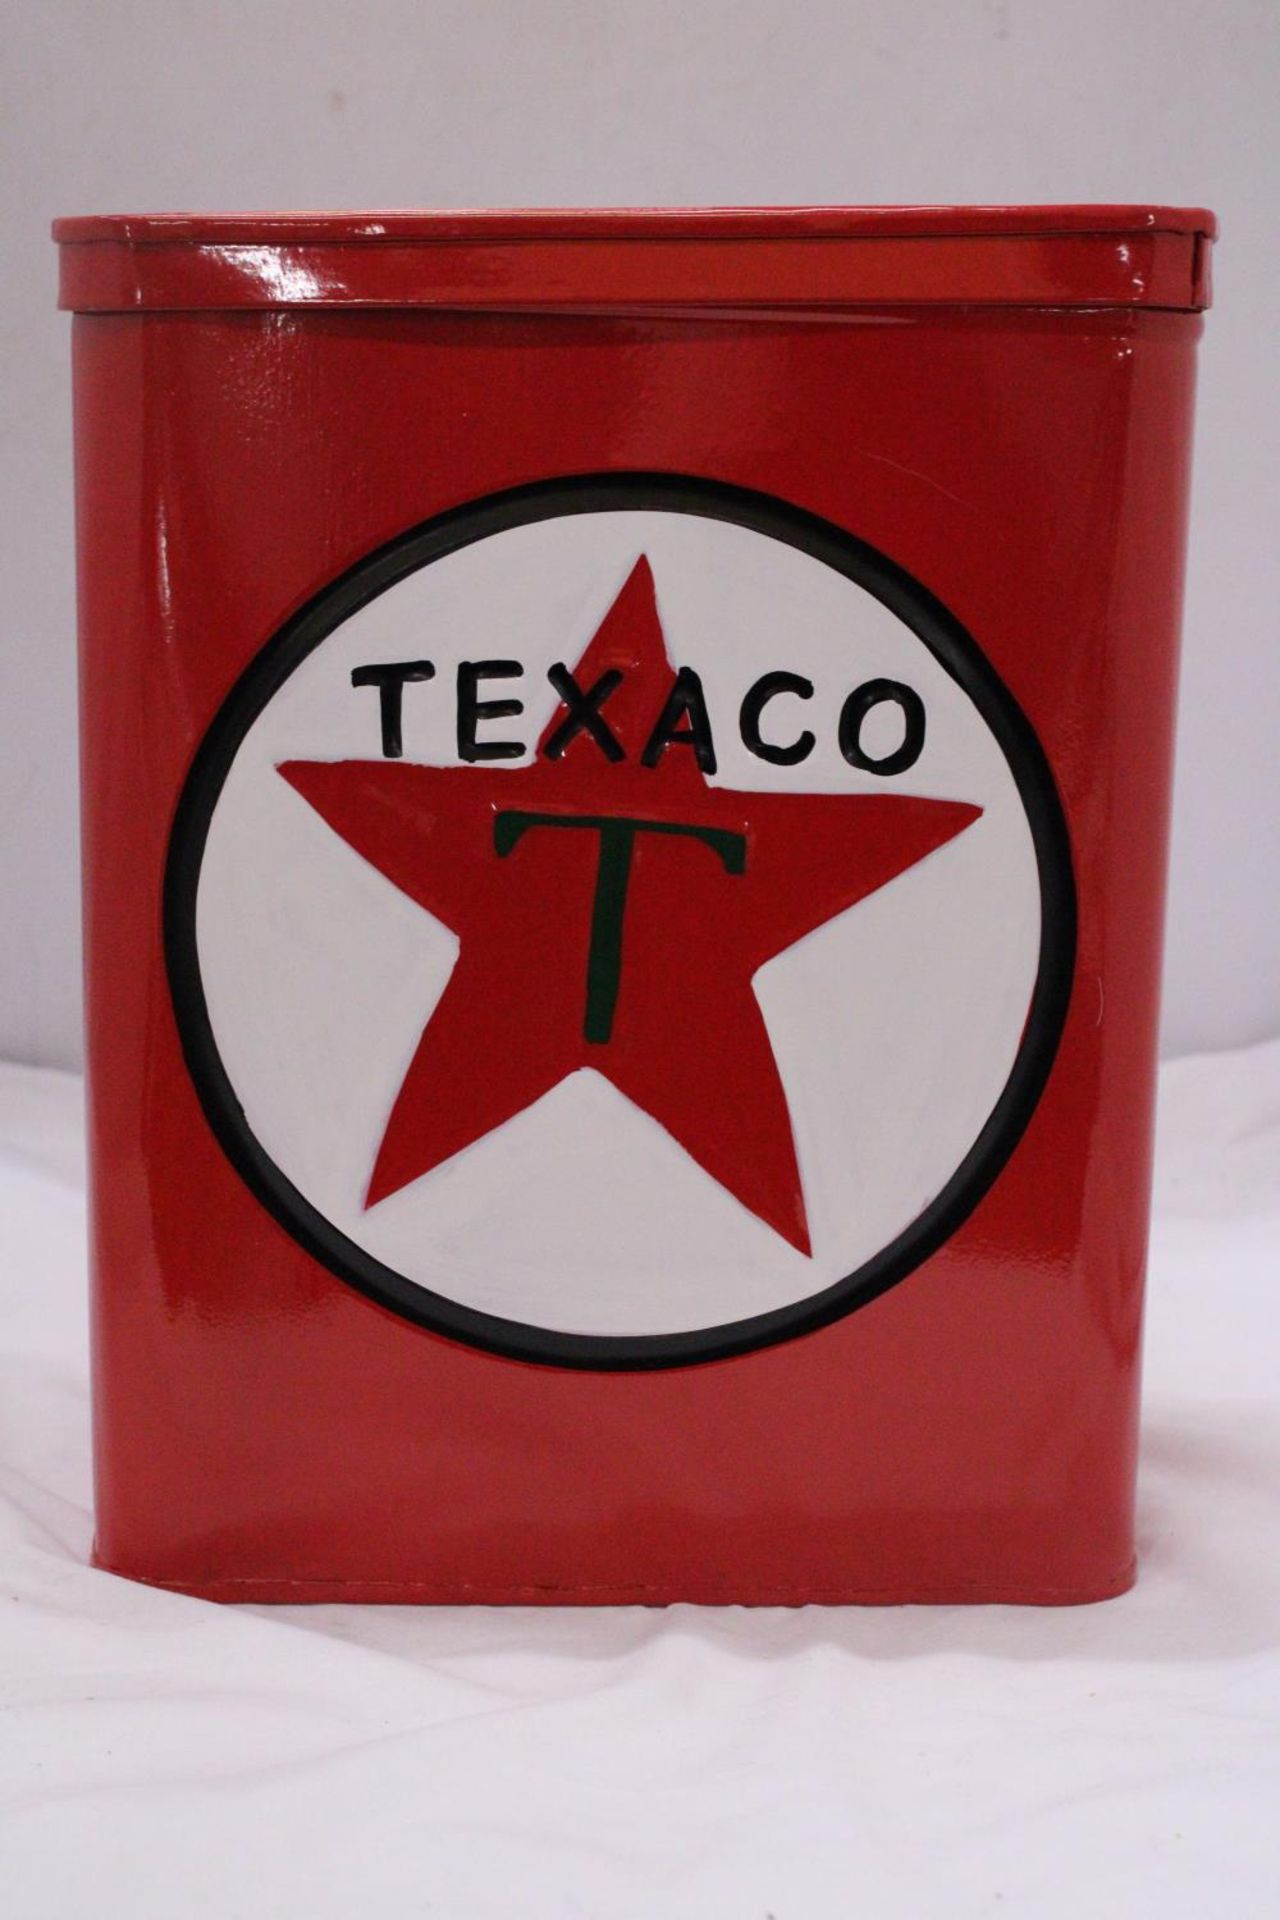 A RED 'TEXACO' STORAGE TIN - Image 3 of 4